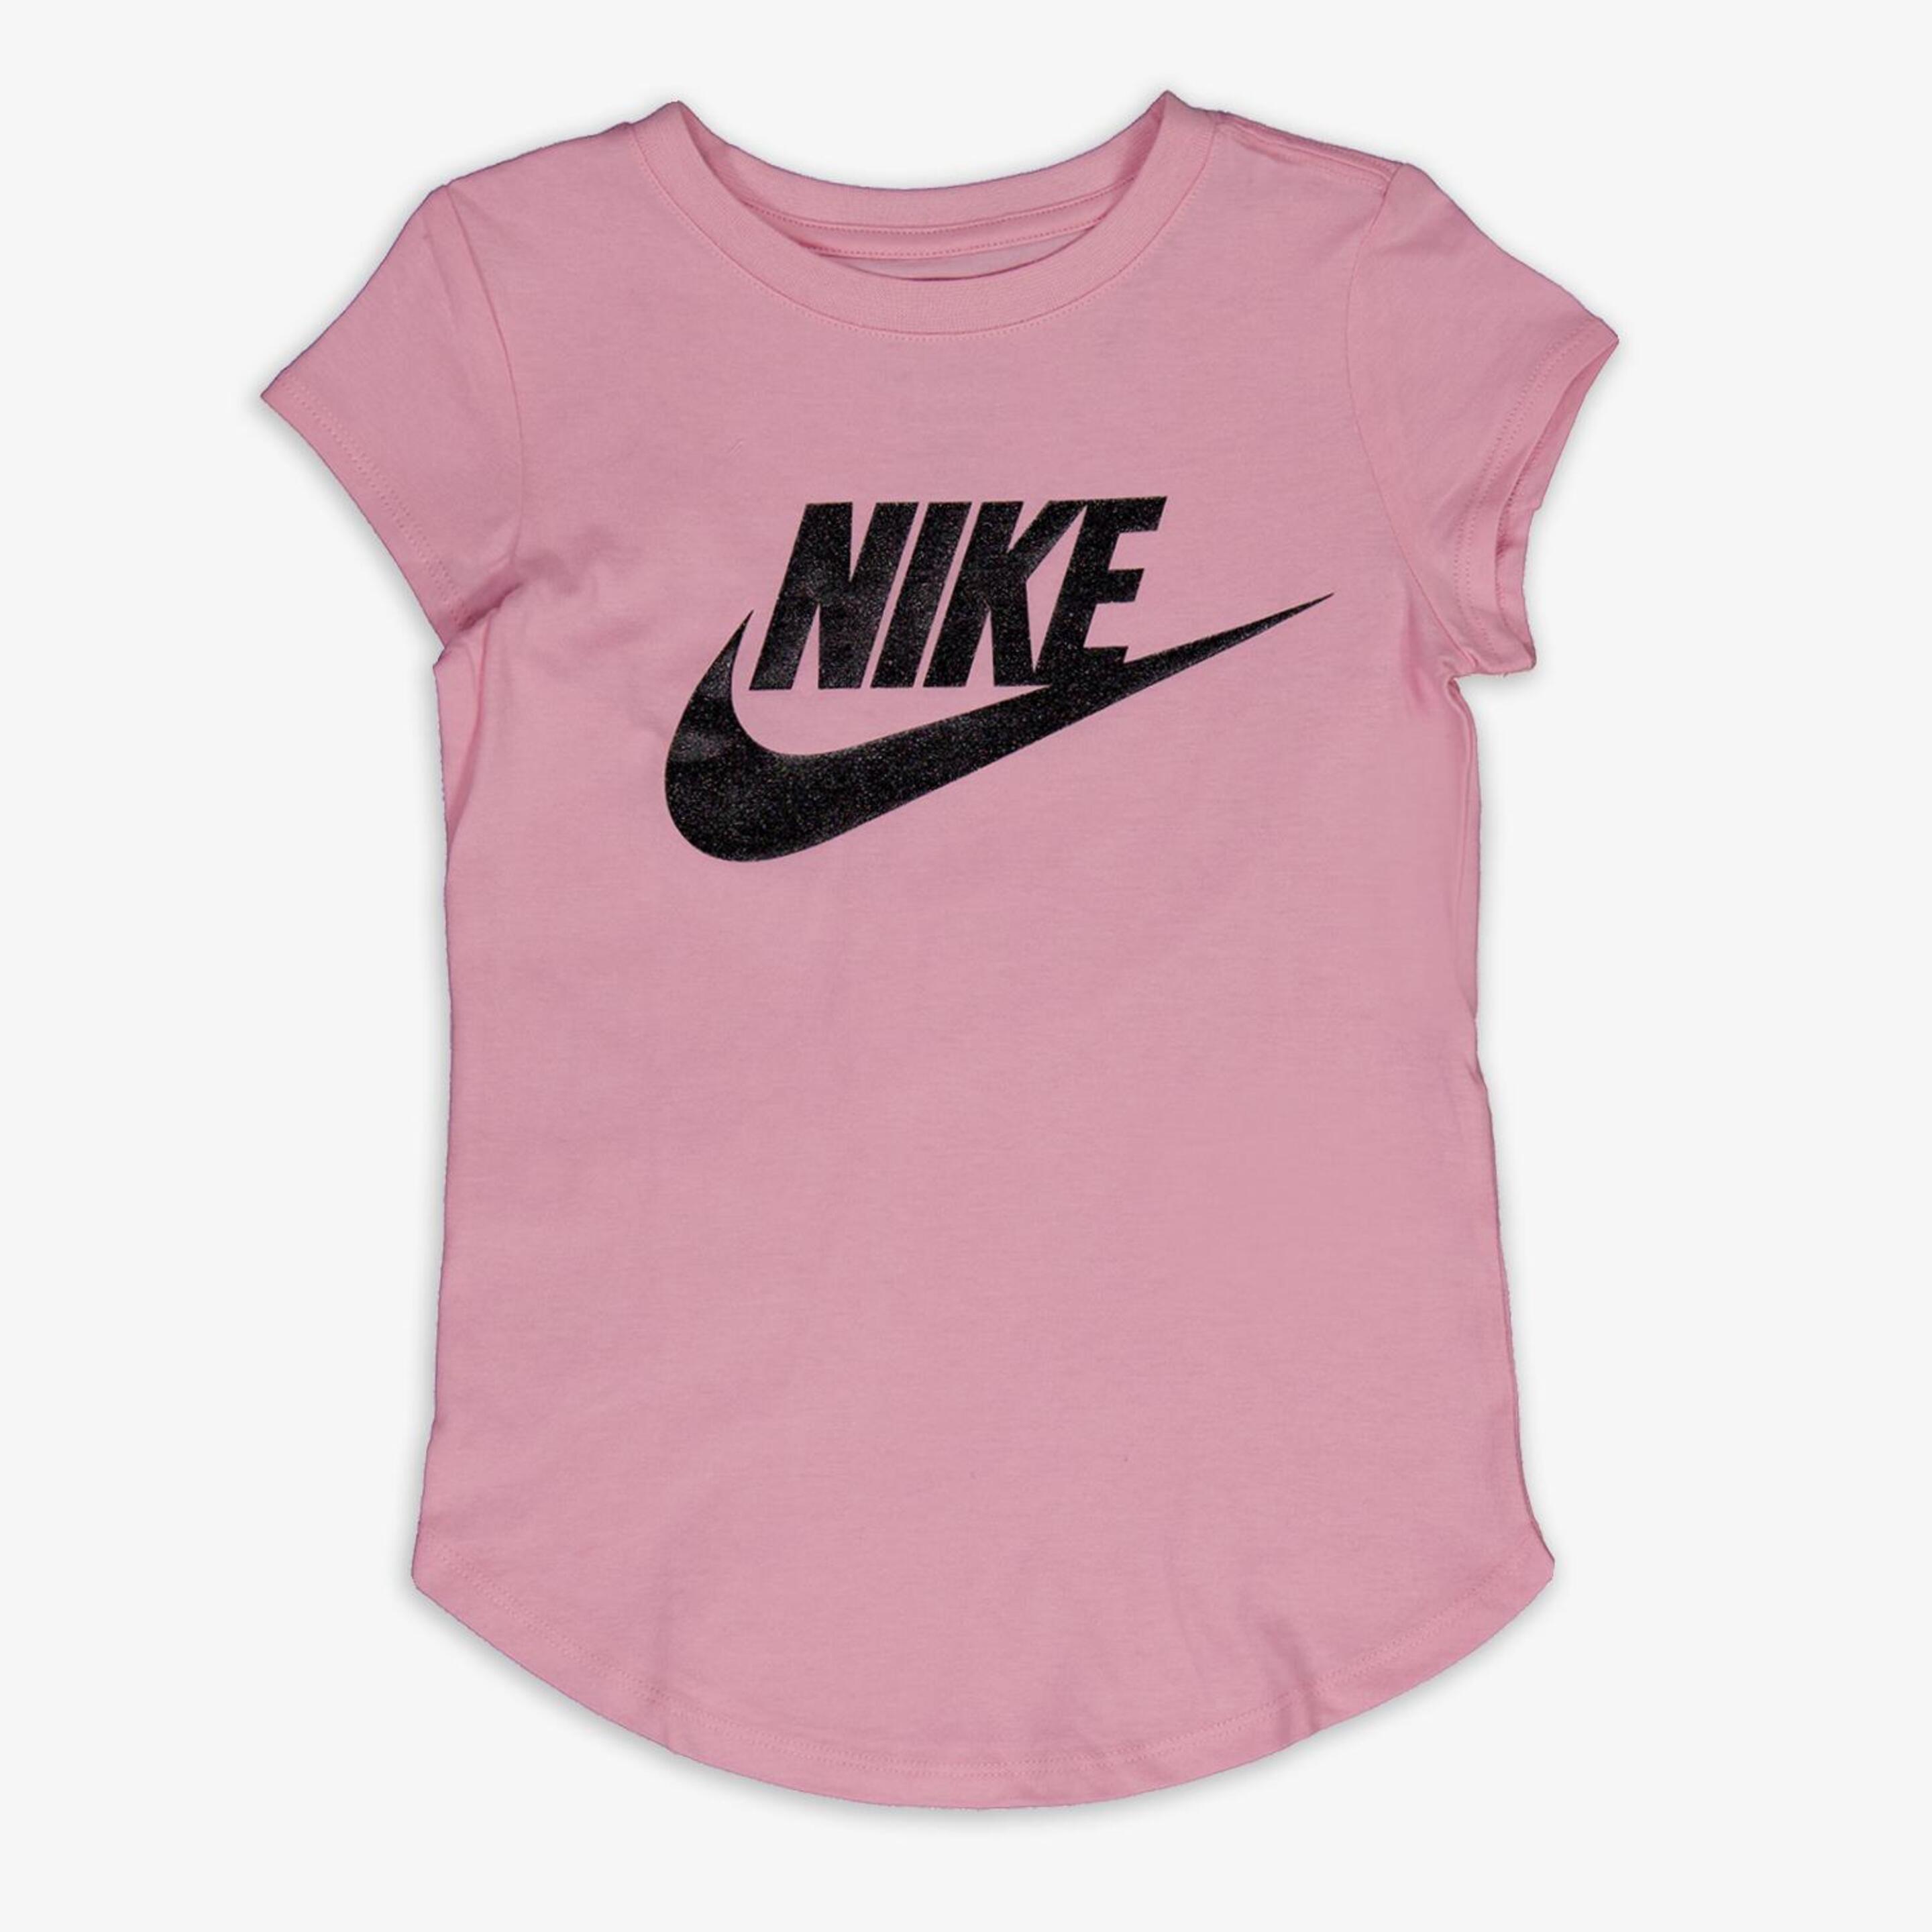 T-shirt Nike - rosa - T-shirt Rapariga